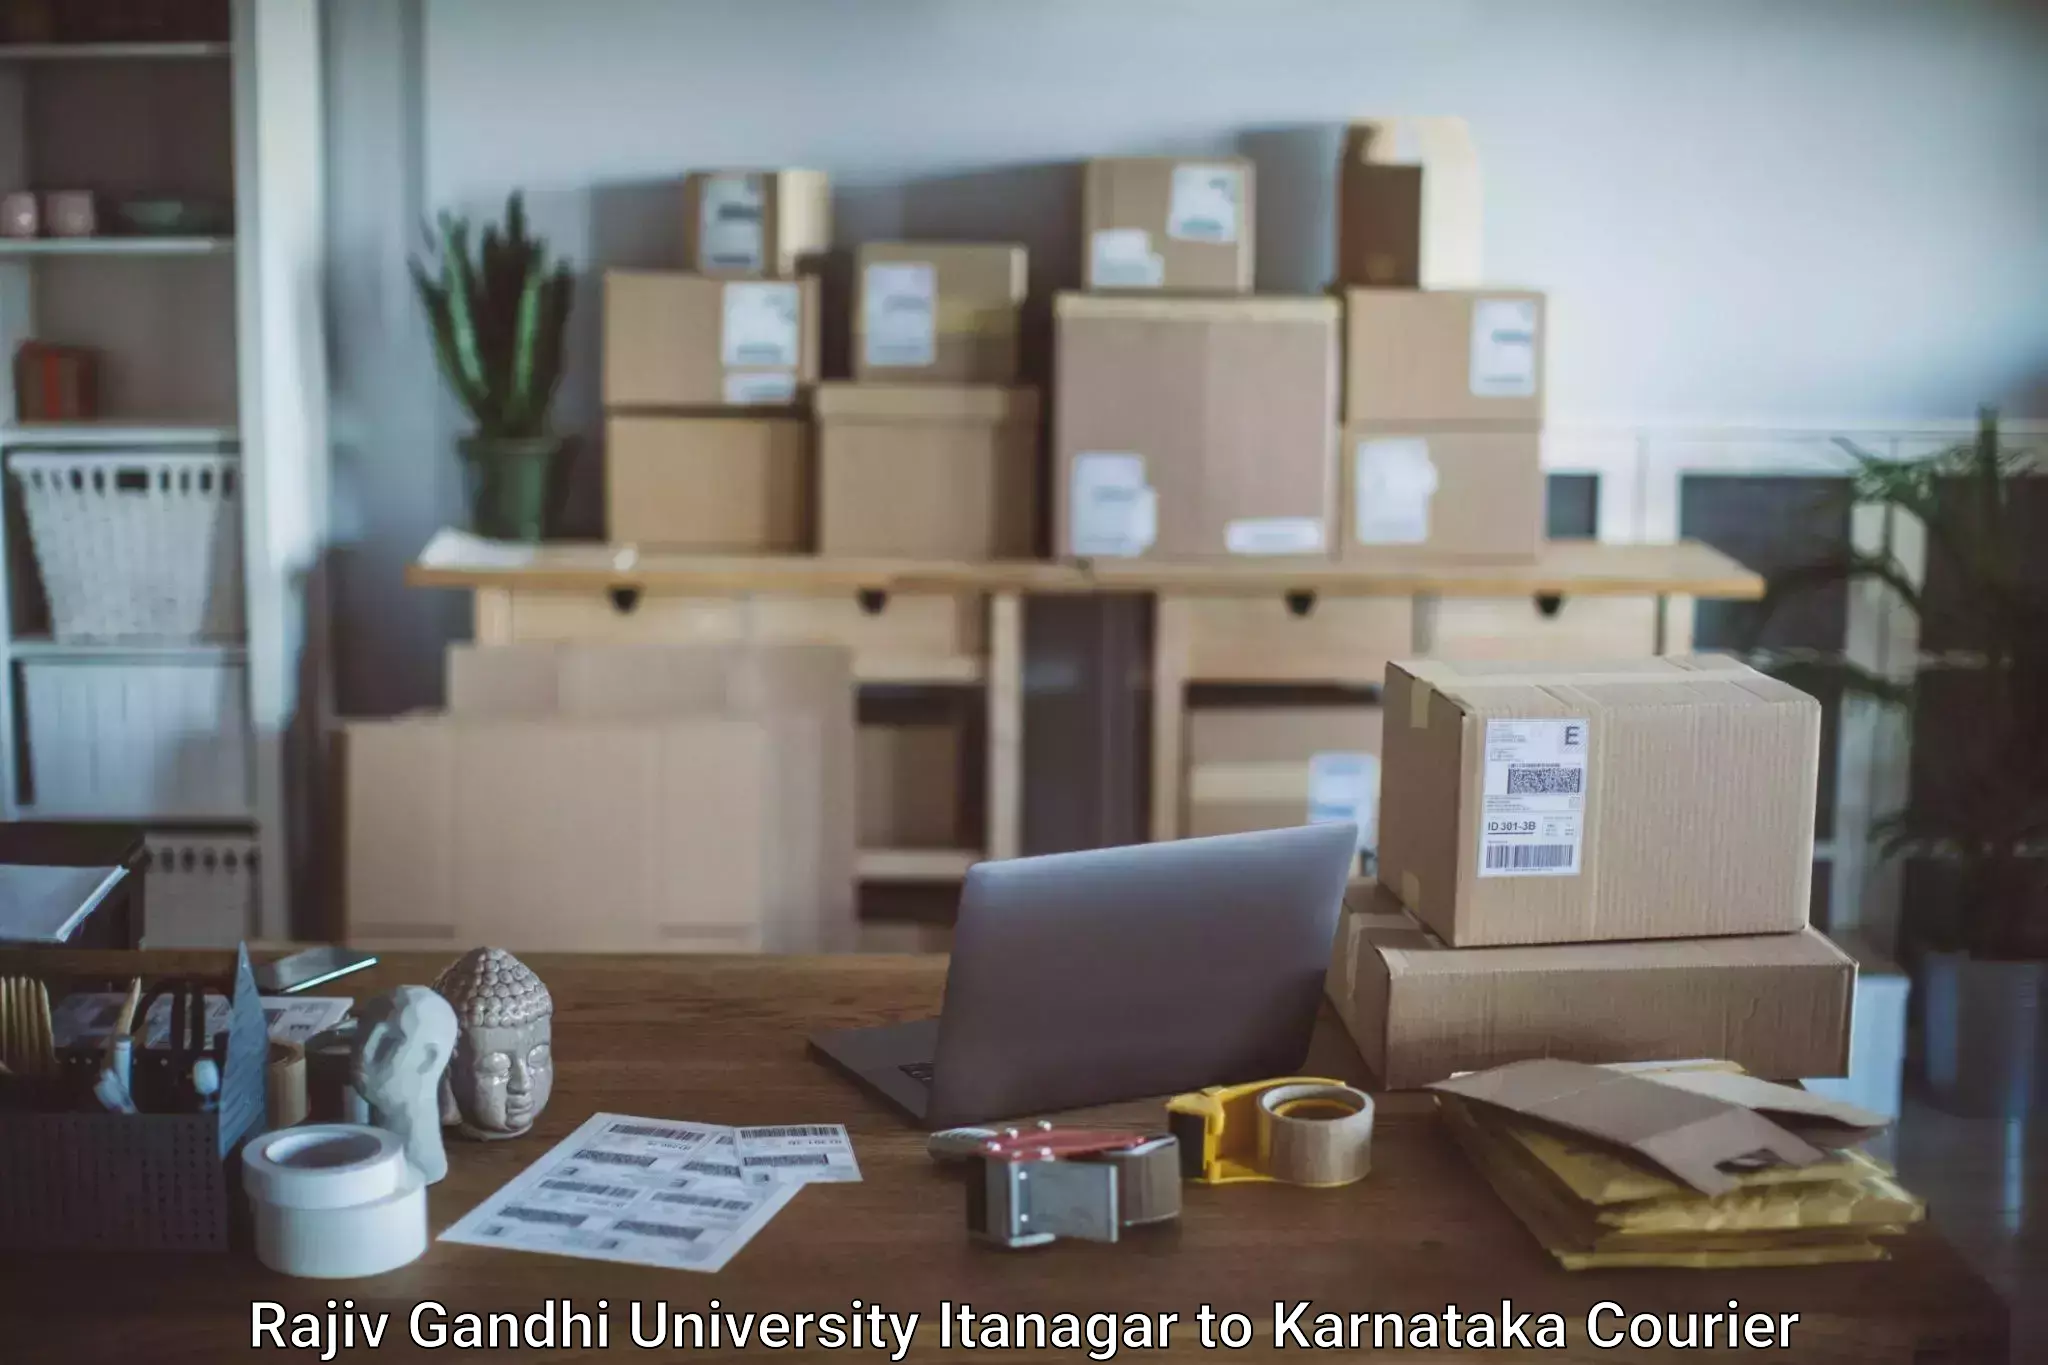 Baggage courier strategy Rajiv Gandhi University Itanagar to Gundlupete